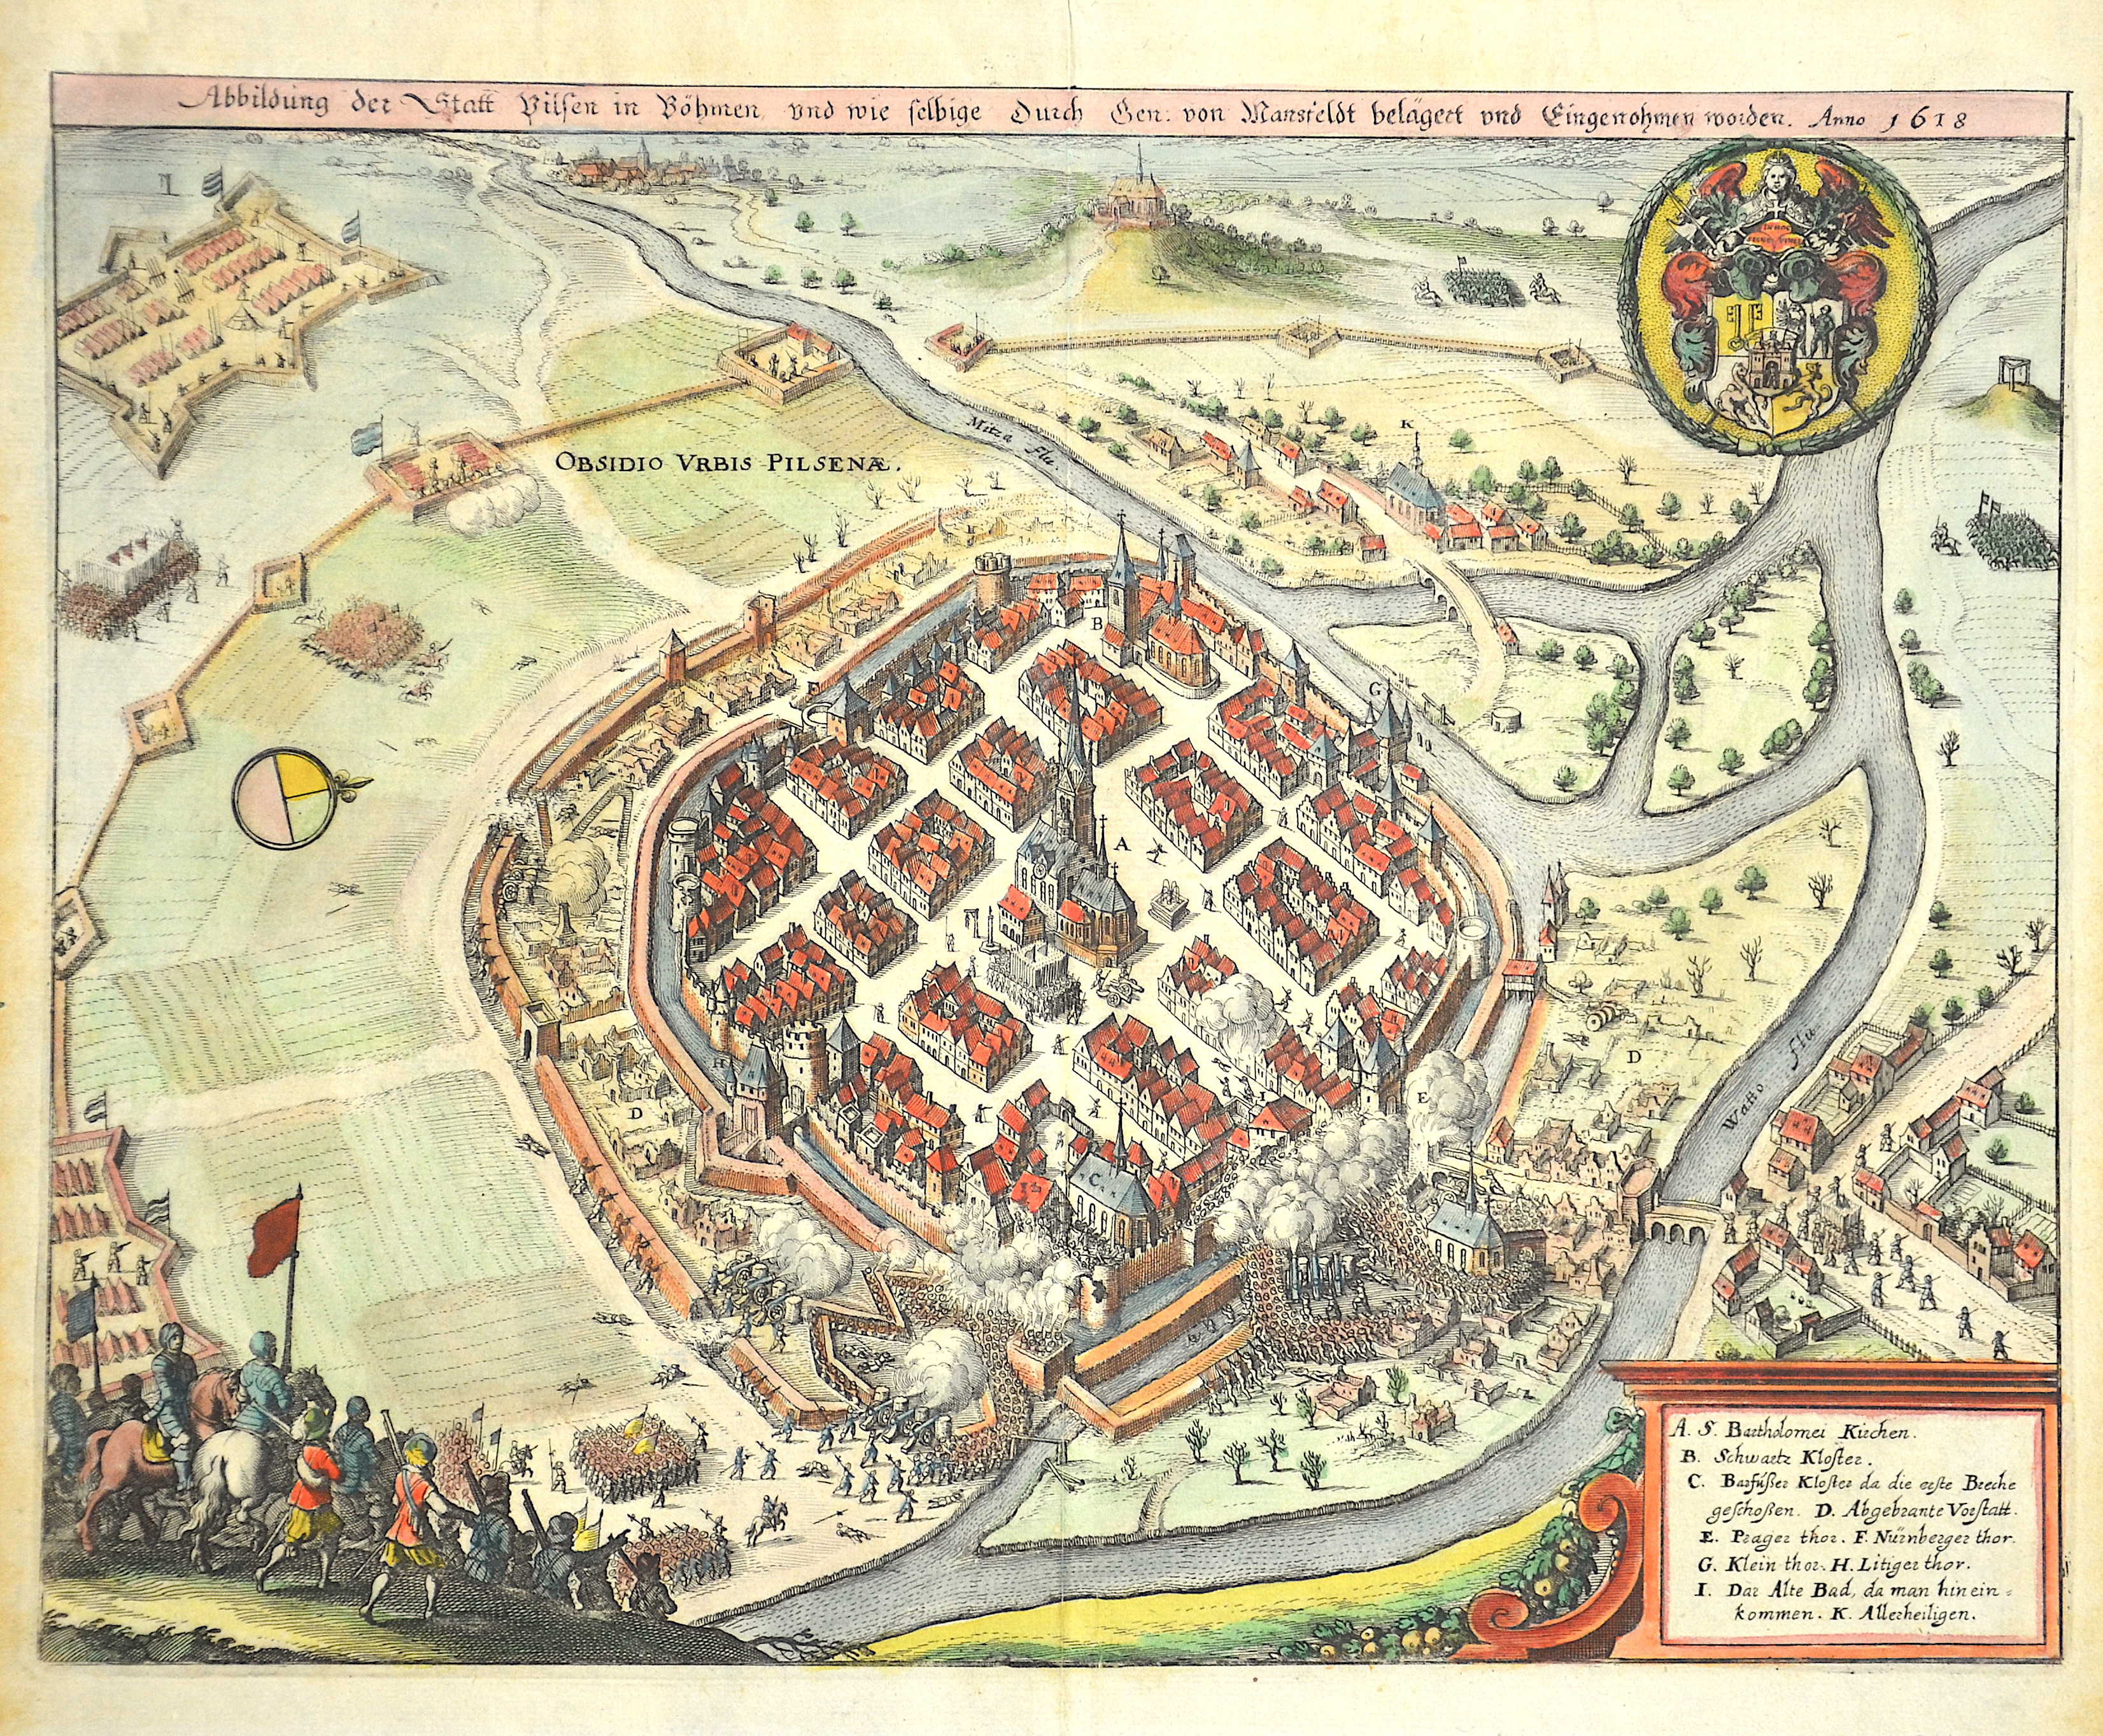 Merian  Abbildung der Statt Vilsen in Böhmen, und wie selbige durch den von Mansfeldt belägert und Eingenohmen worden. Anno 1618